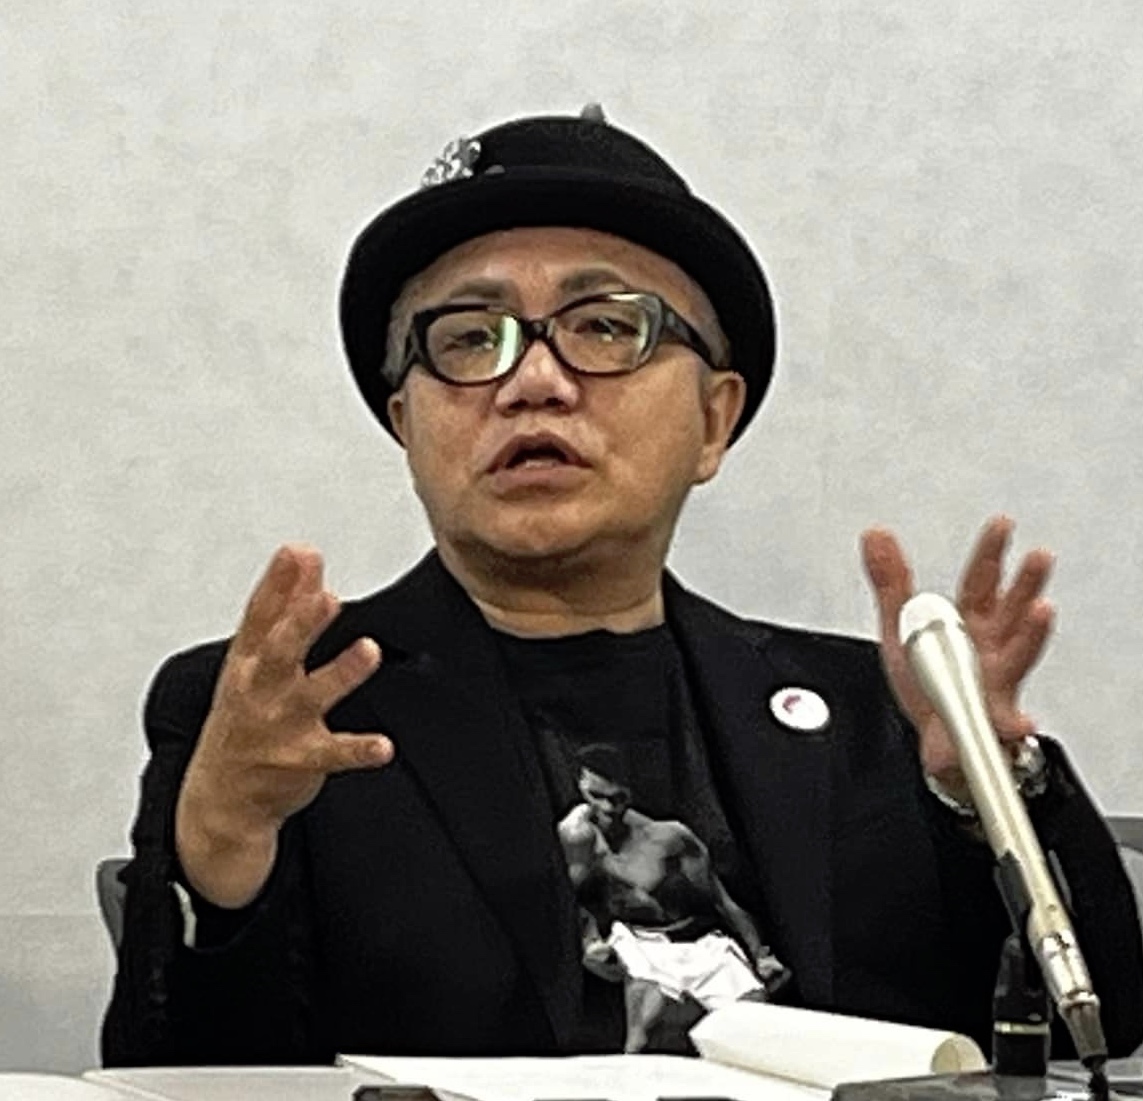 松井一郎に訴えられた水道橋博士が大阪高裁で敗訴、即最高裁上告を決意。この裁判が理不尽極まりない理由とは